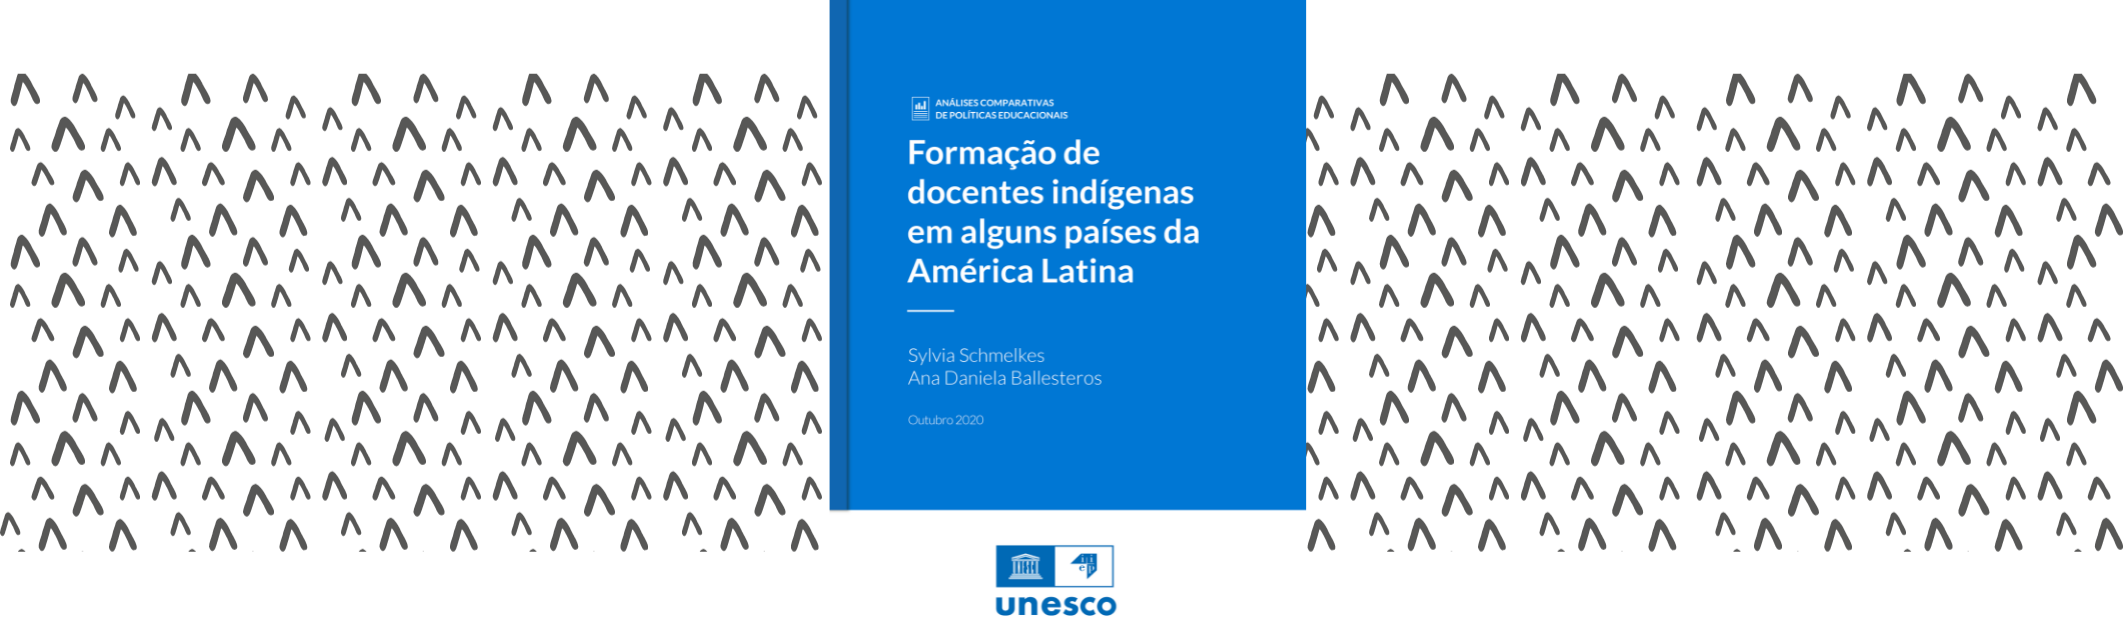 Formação de docentes indígenas em alguns países da América Latina